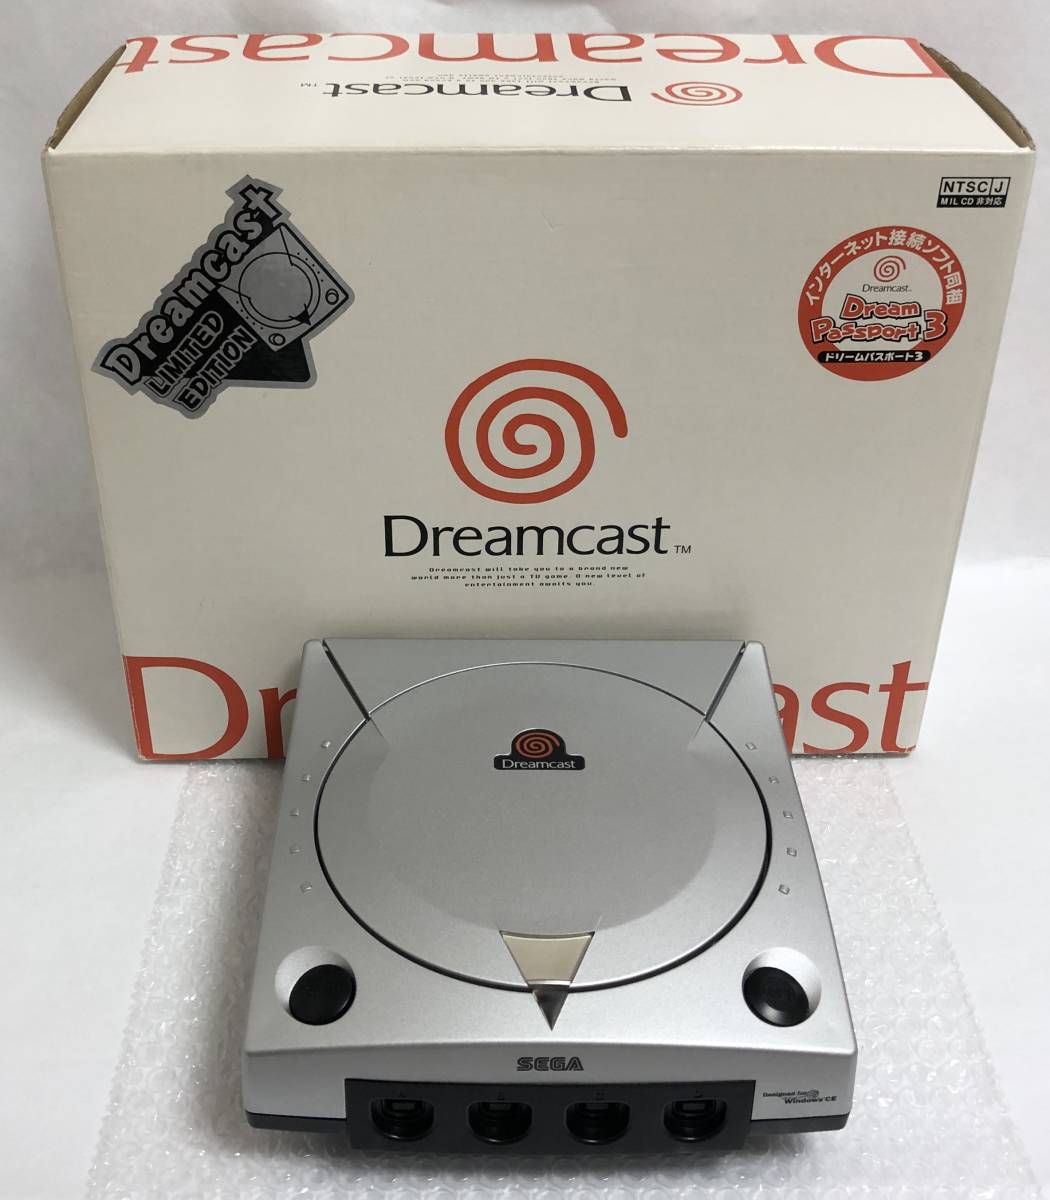 【送料無料】 美品 限定版 セガ ドリームキャスト 本体 シルバーメタリック Sega Dreamcast Limited Edition Metallic Silver Console